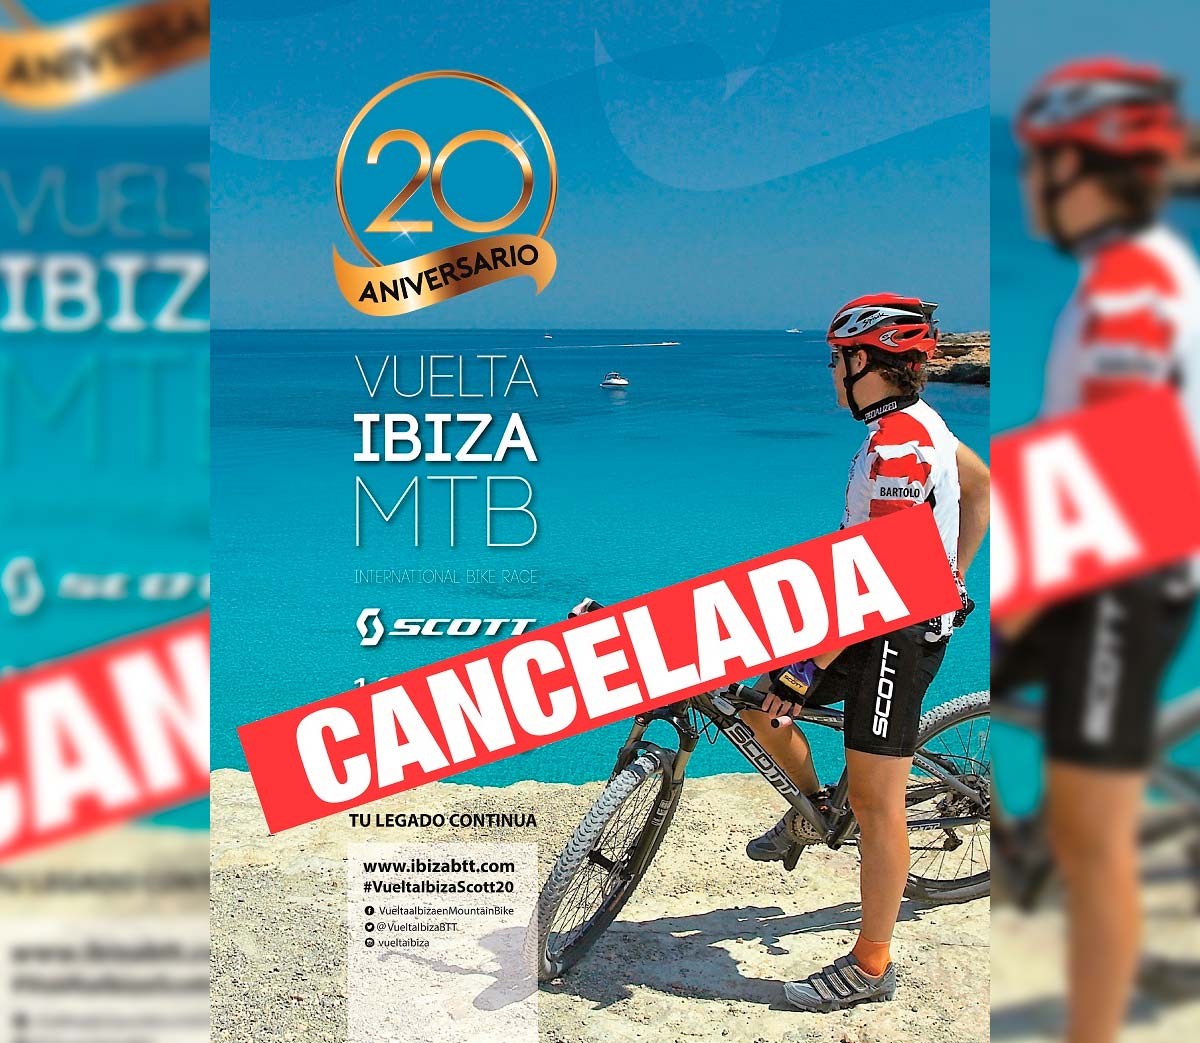 La Vuelta Ibiza MTB 2020 se cancela, regresará el próximo año